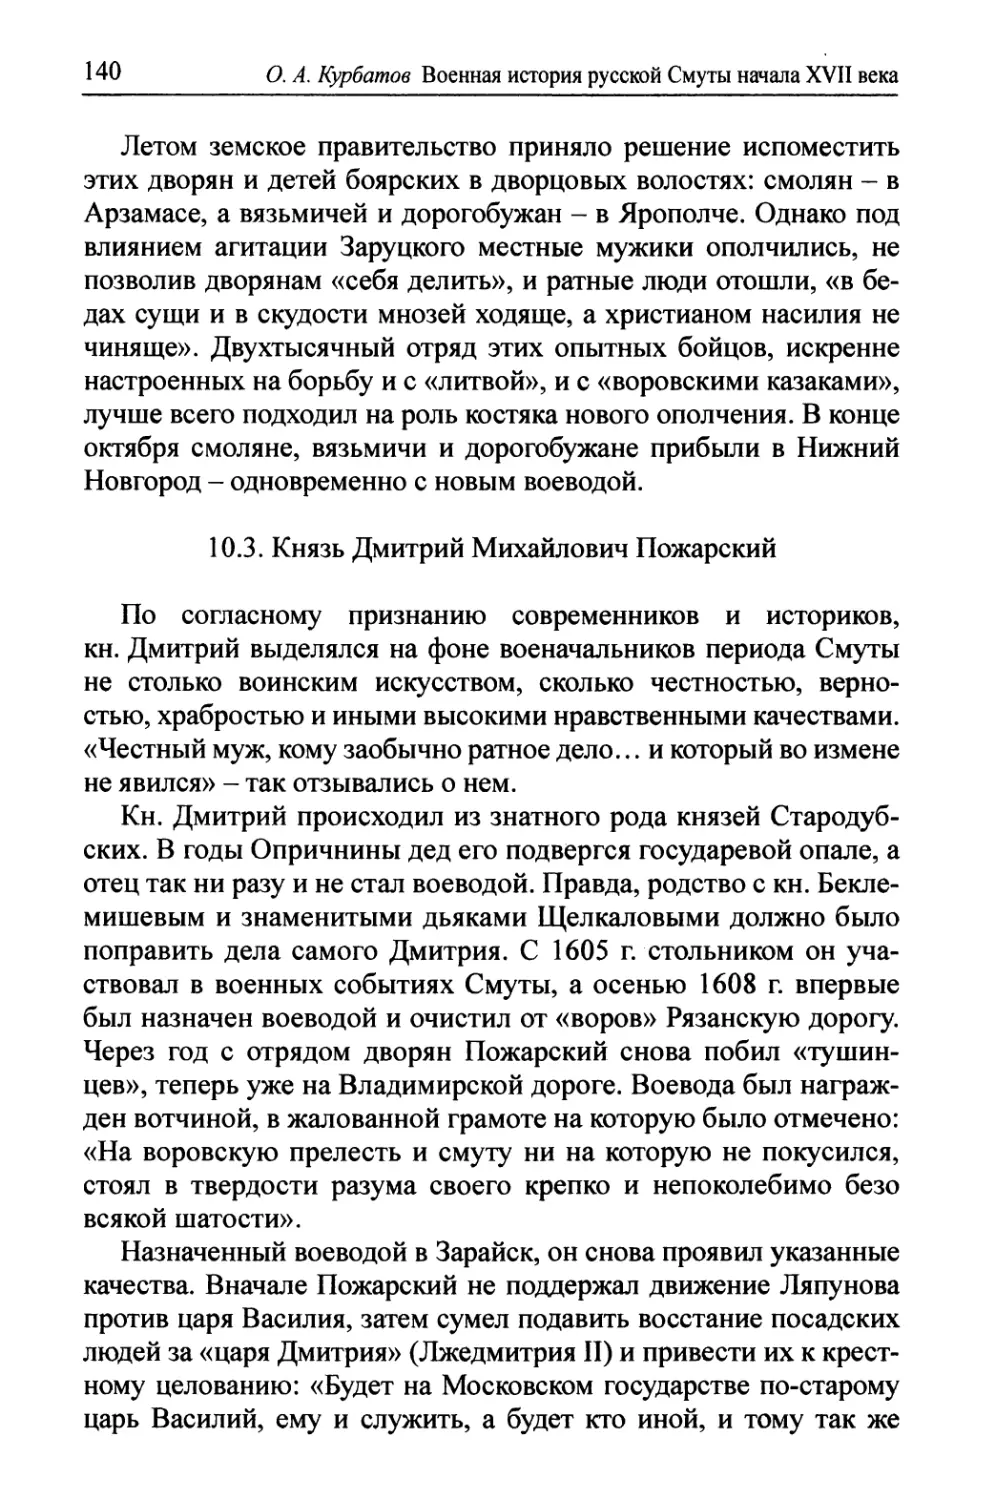 10.3. Князь Дмитрий Михайлович Пожарский